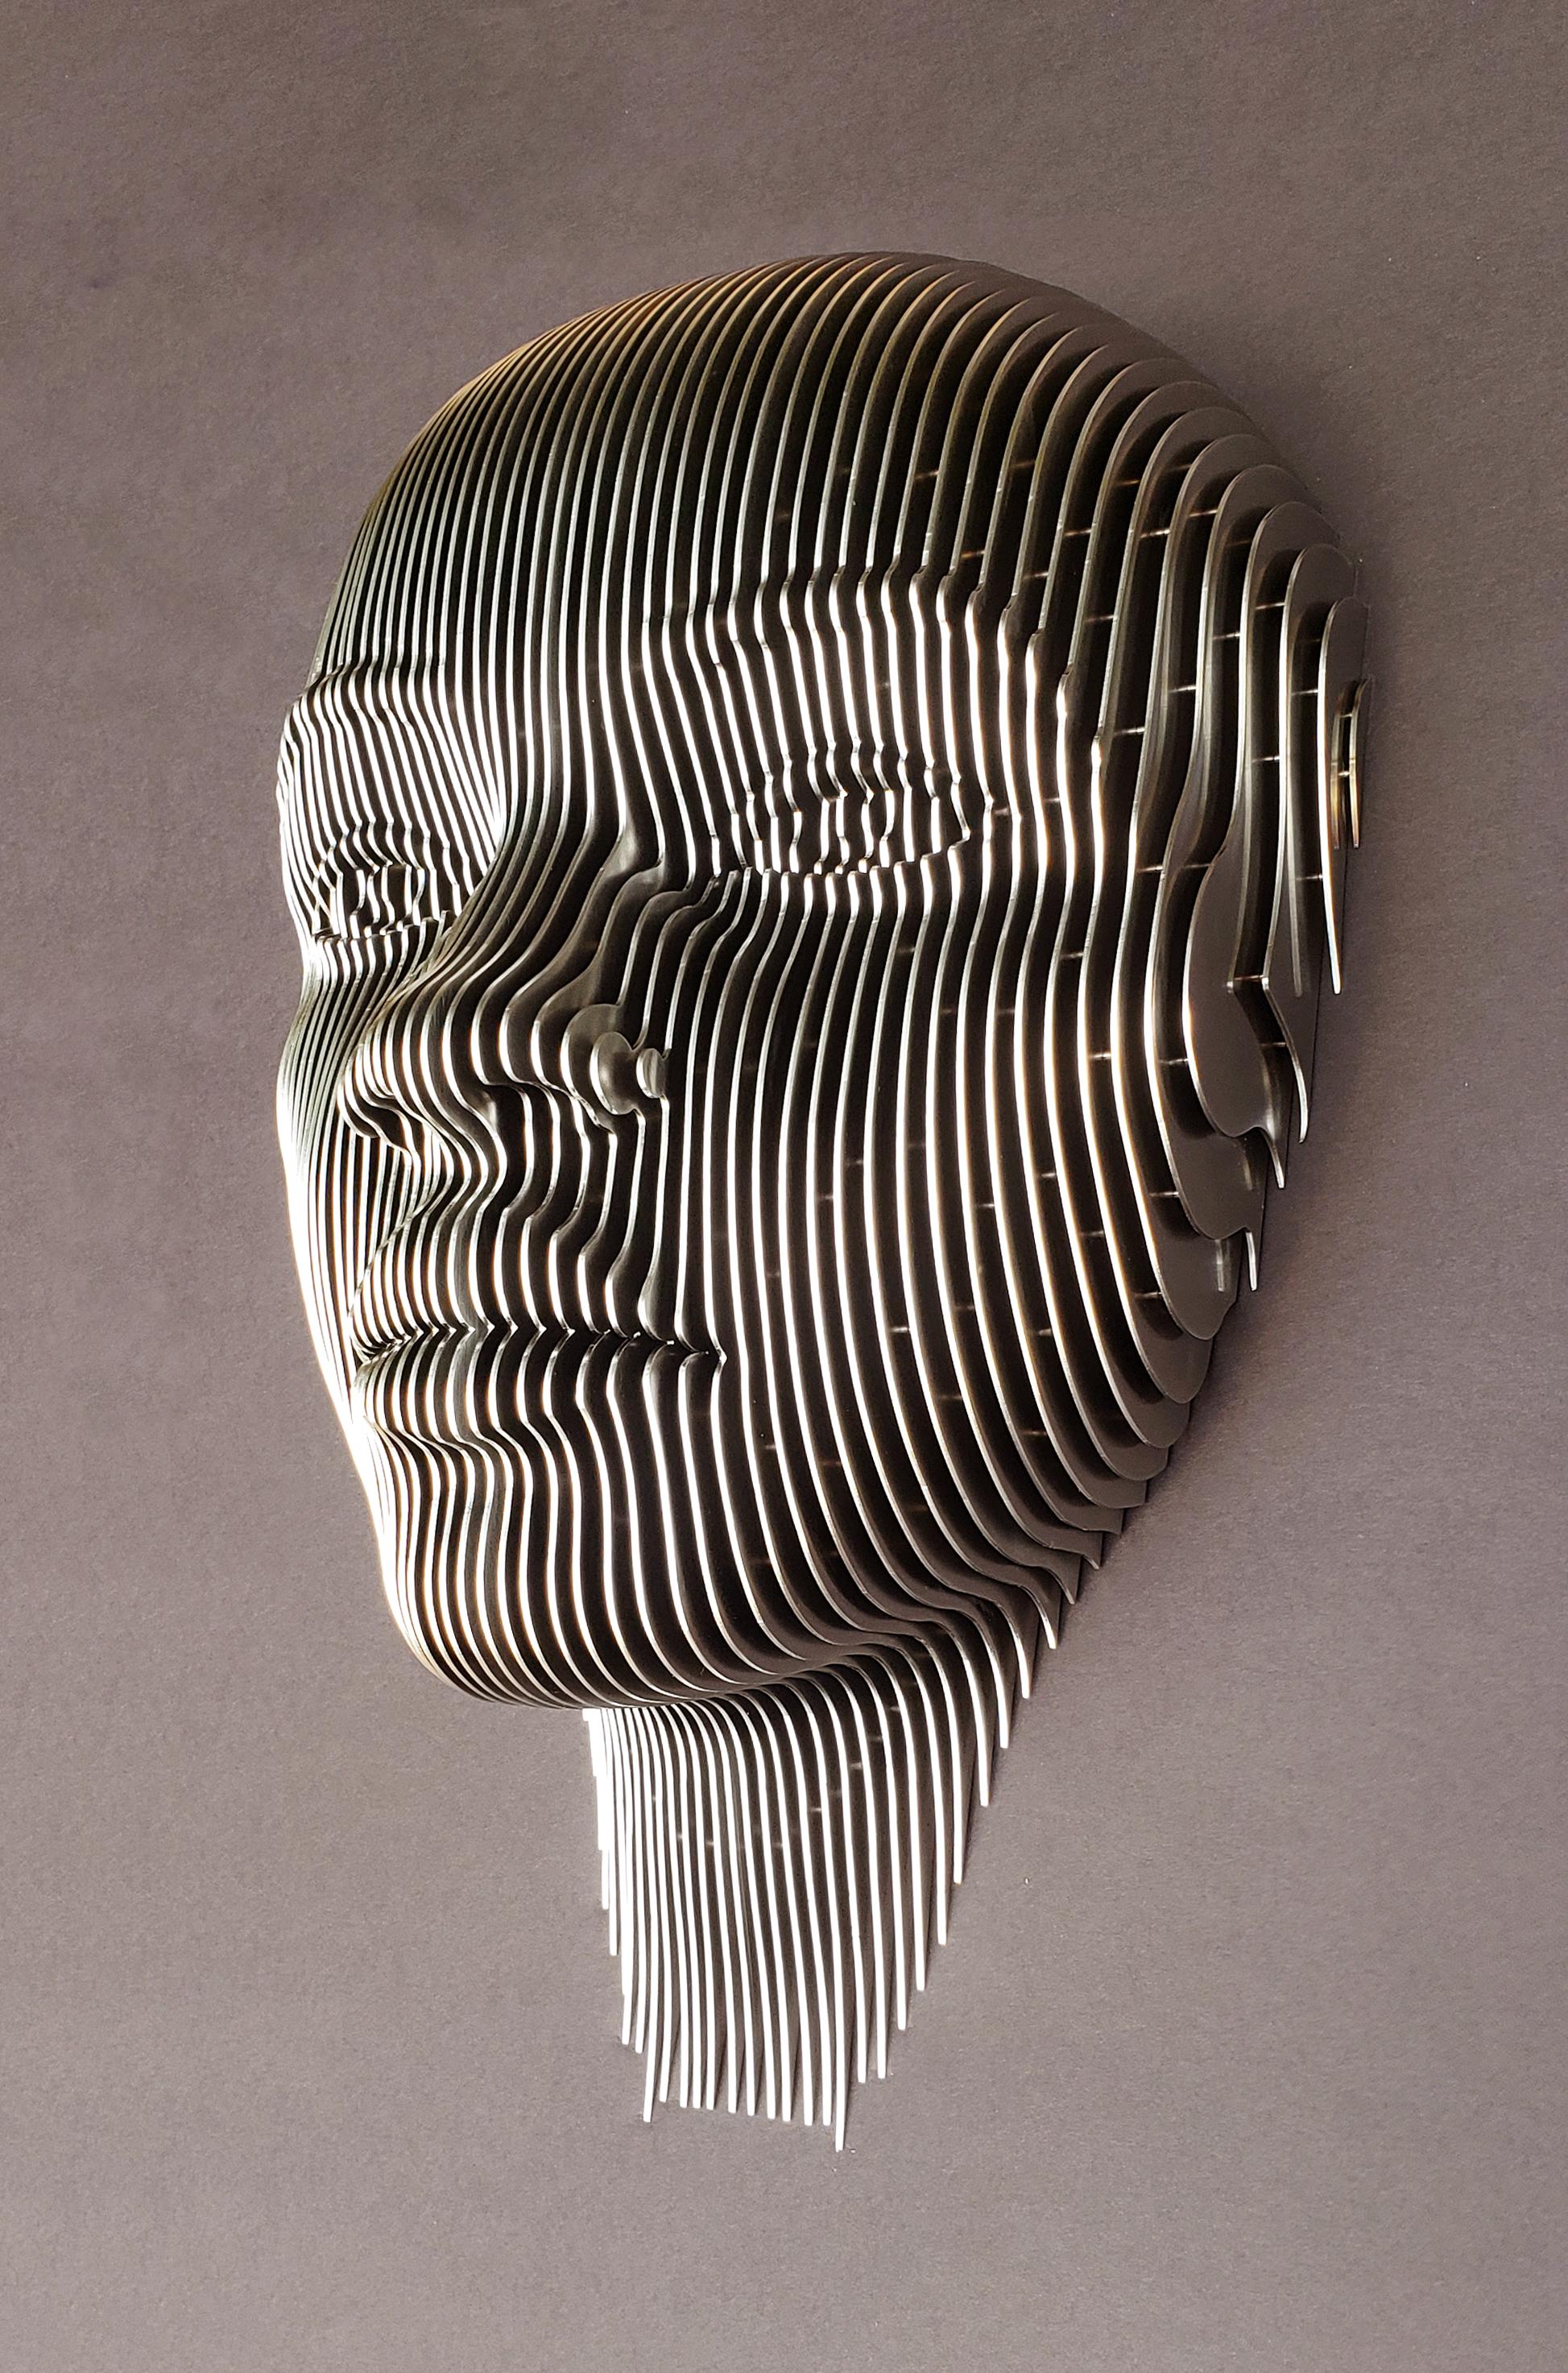 Figurative Sculpture Lyle London - BEAUTÉ